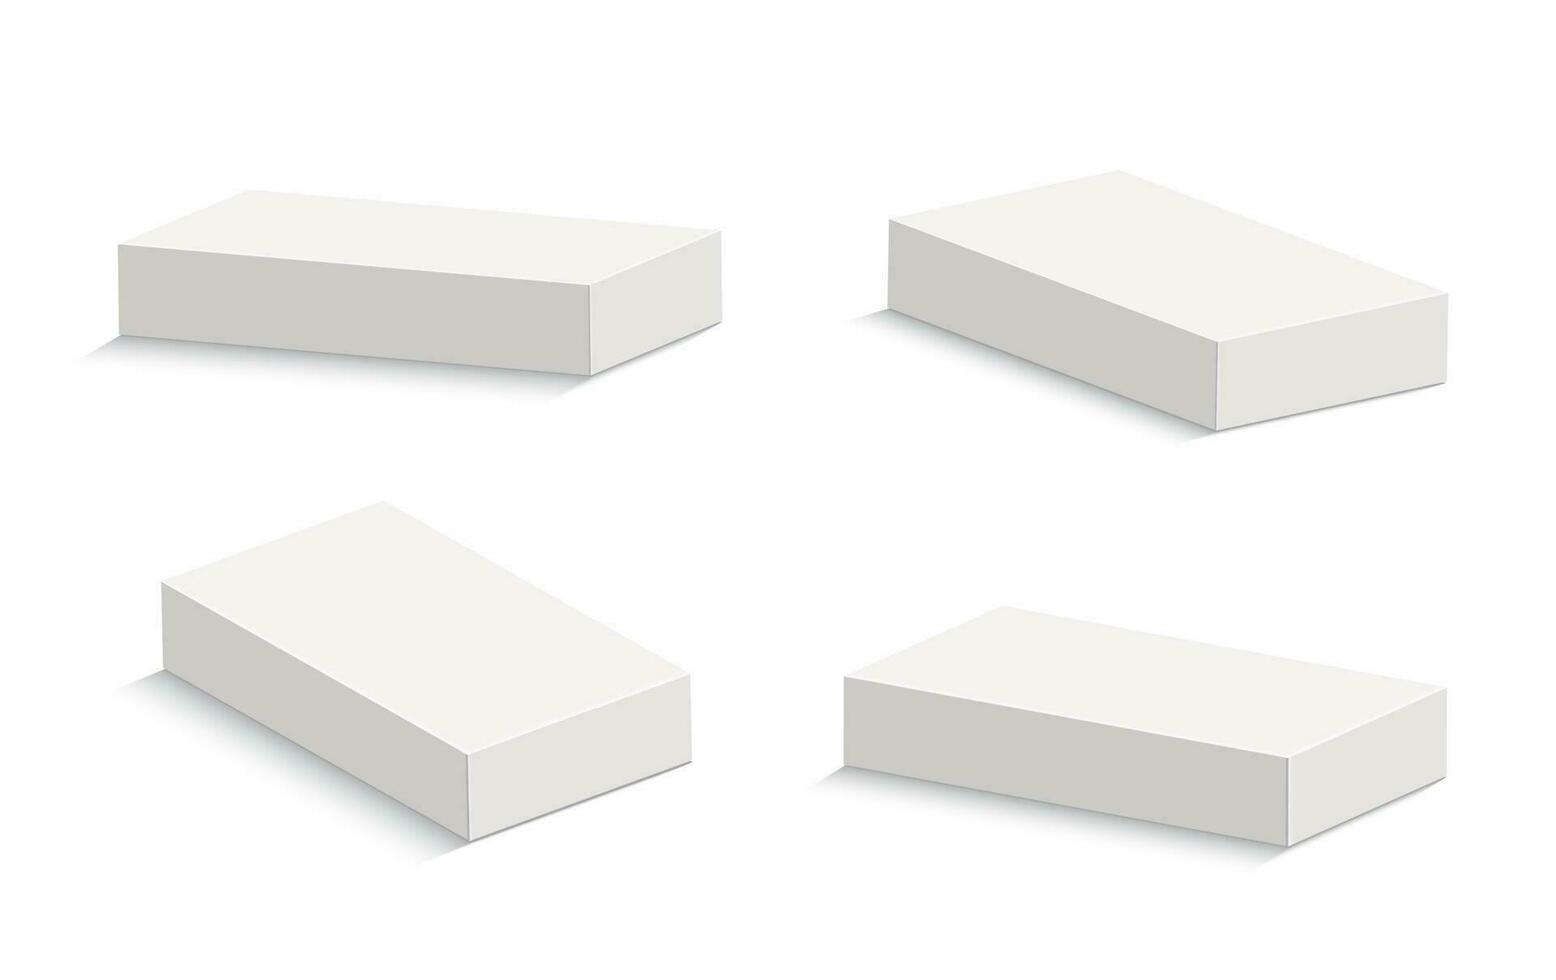 Weiß Karton Paket Box Vorlage. realistisch leeren Box Attrappe, Lehrmodell, Simulation zum Produkt Verpackung isoliert auf Weiß Hintergrund. Vektor Illustration